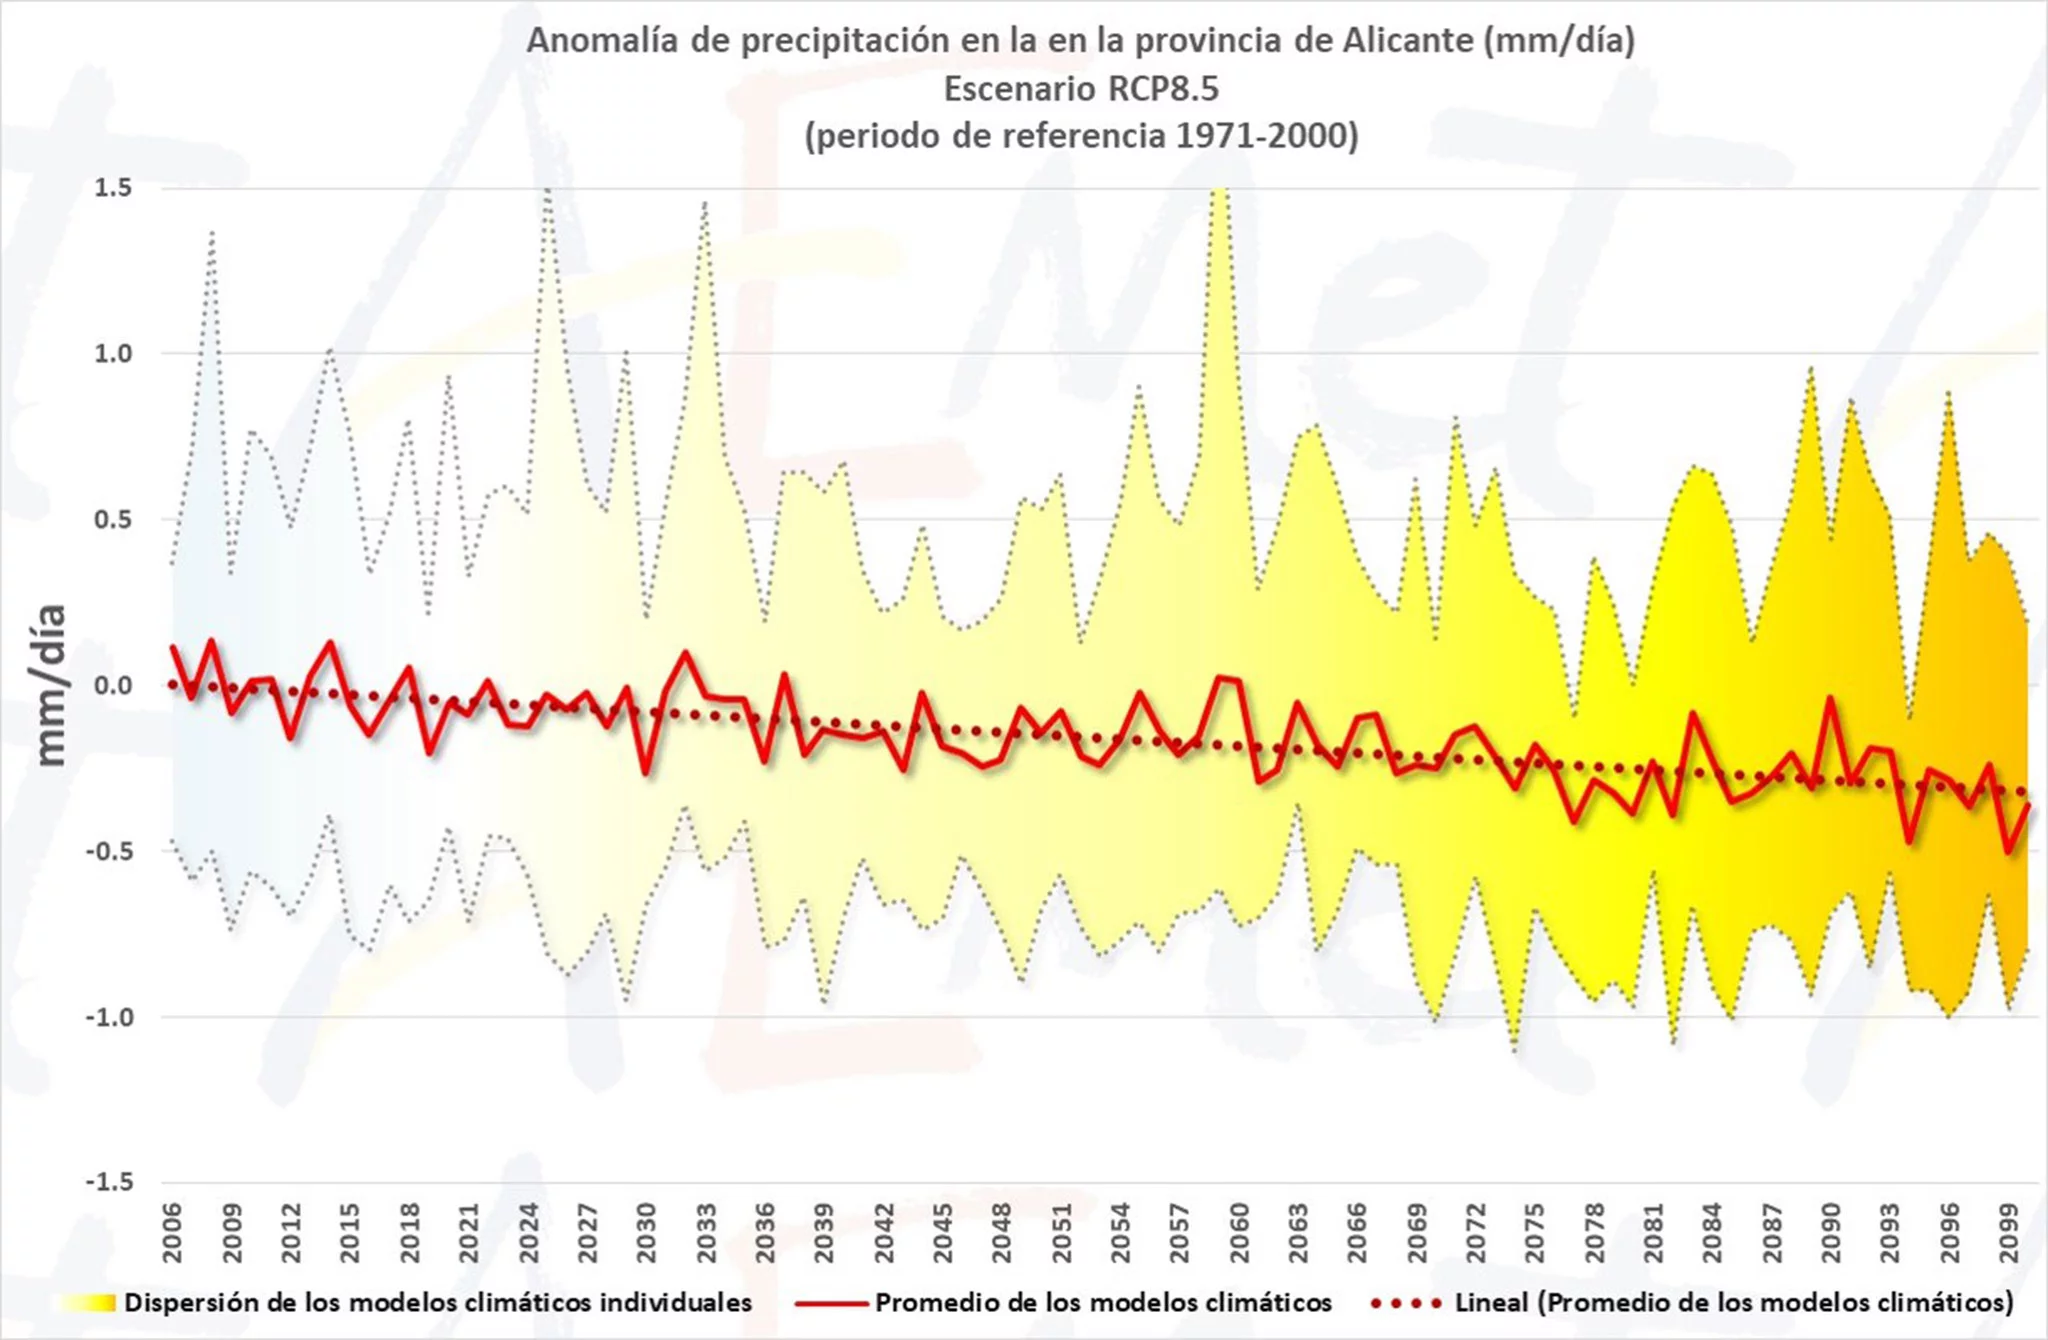 Tendencia de precipitaciones prevista para este siglo en la provincia de Alicante, según AEMET